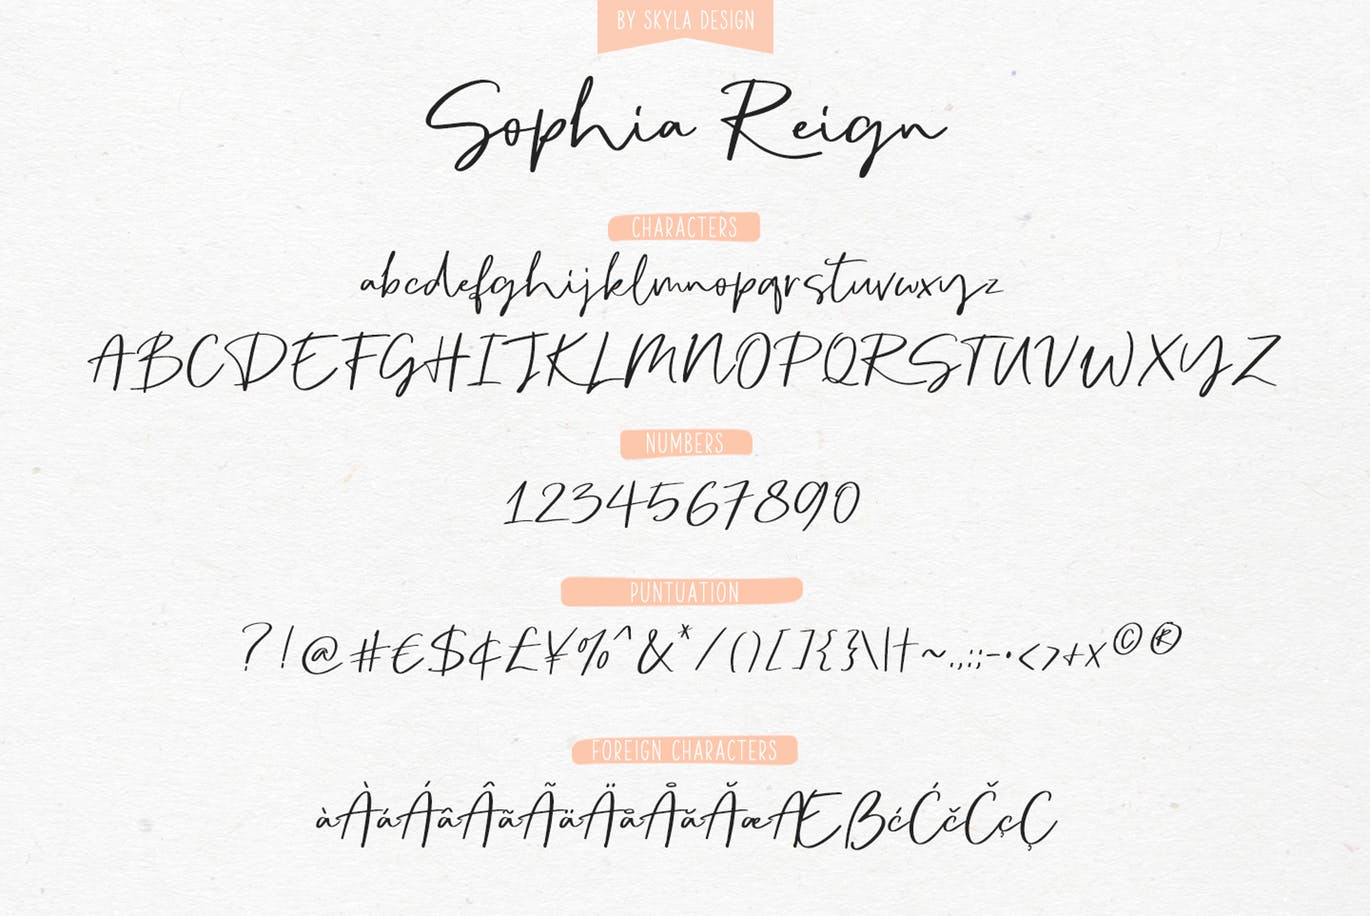 英文钢笔签名字体蚂蚁素材精选&大写字母正楷字体蚂蚁素材精选二重奏 Sophia Reign signature font duo插图(10)